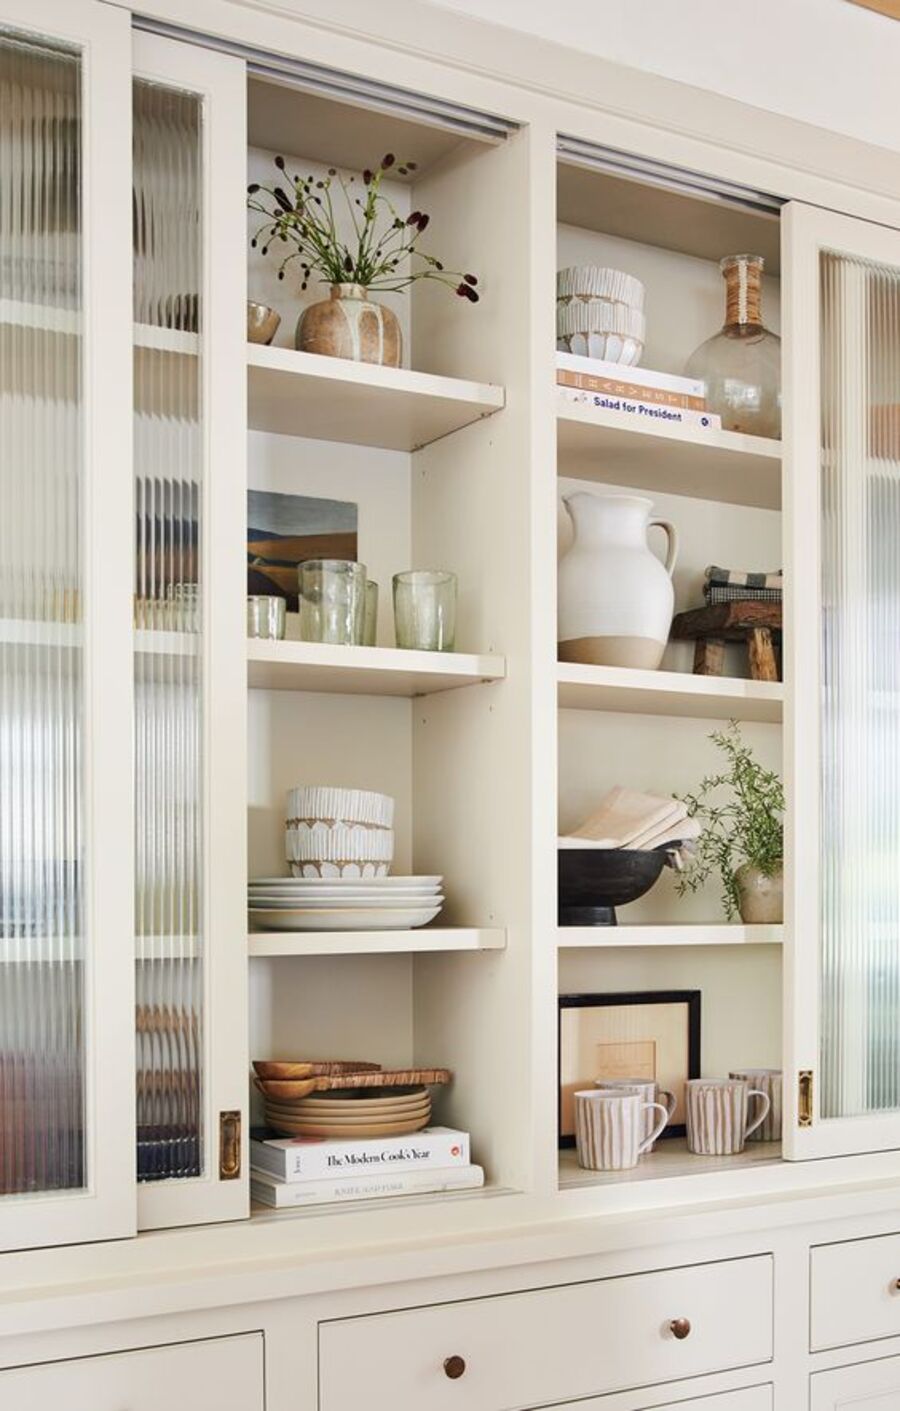 Mueble de comedor con varias repisas y puertas correderas de vidrio acanalado. En los estantes hay vasos, platos, tazas, bowls, jarrones, libros y plantas. En la parte inferior del mueble hay cajones.